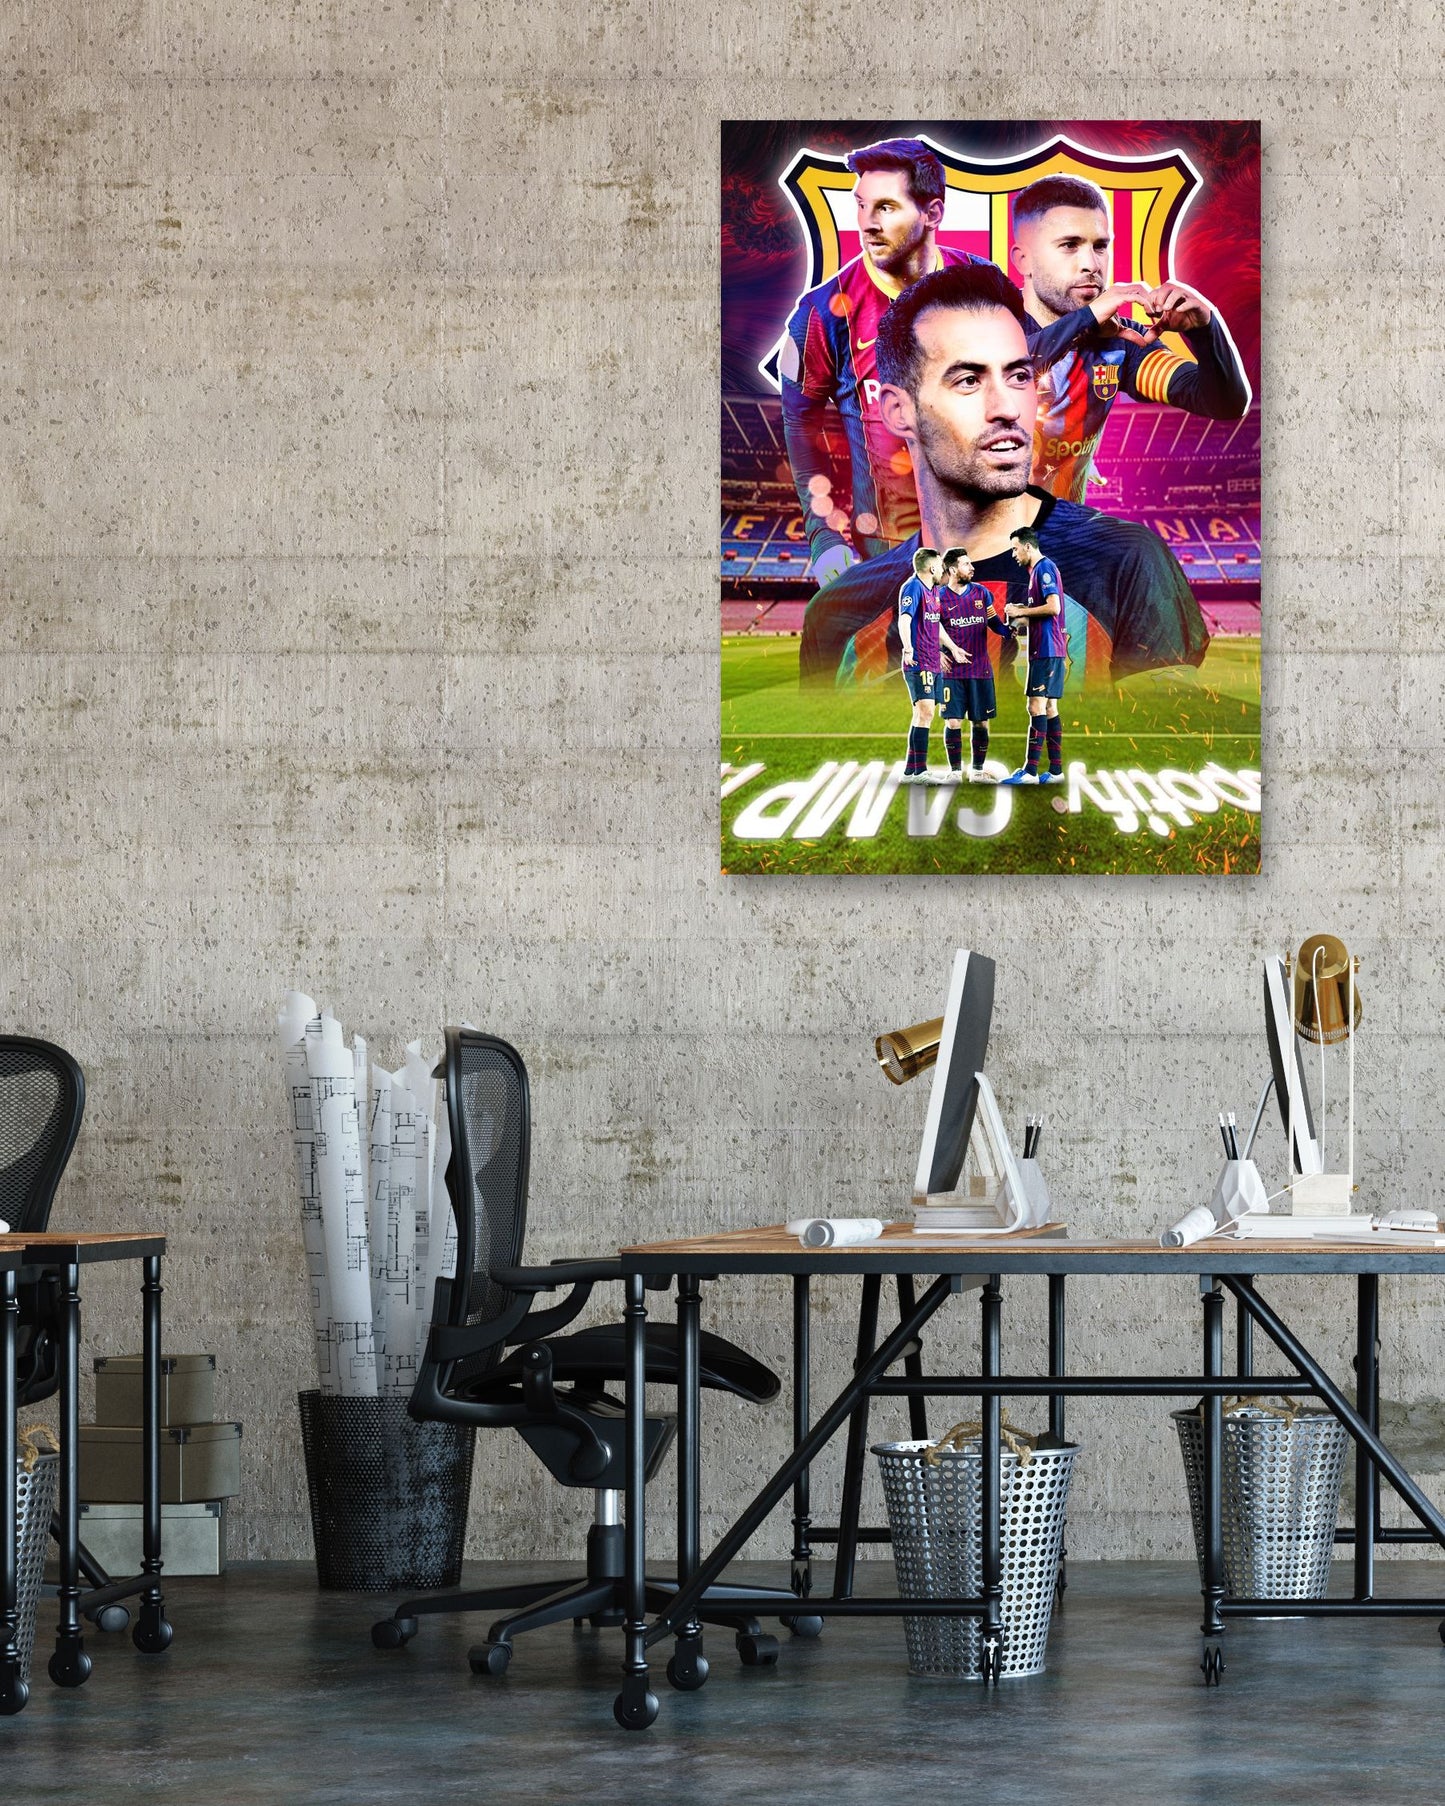 Lionel Messi Sergio Busquets Jordi Alba Barcelona Legend - @ColorizeStudio